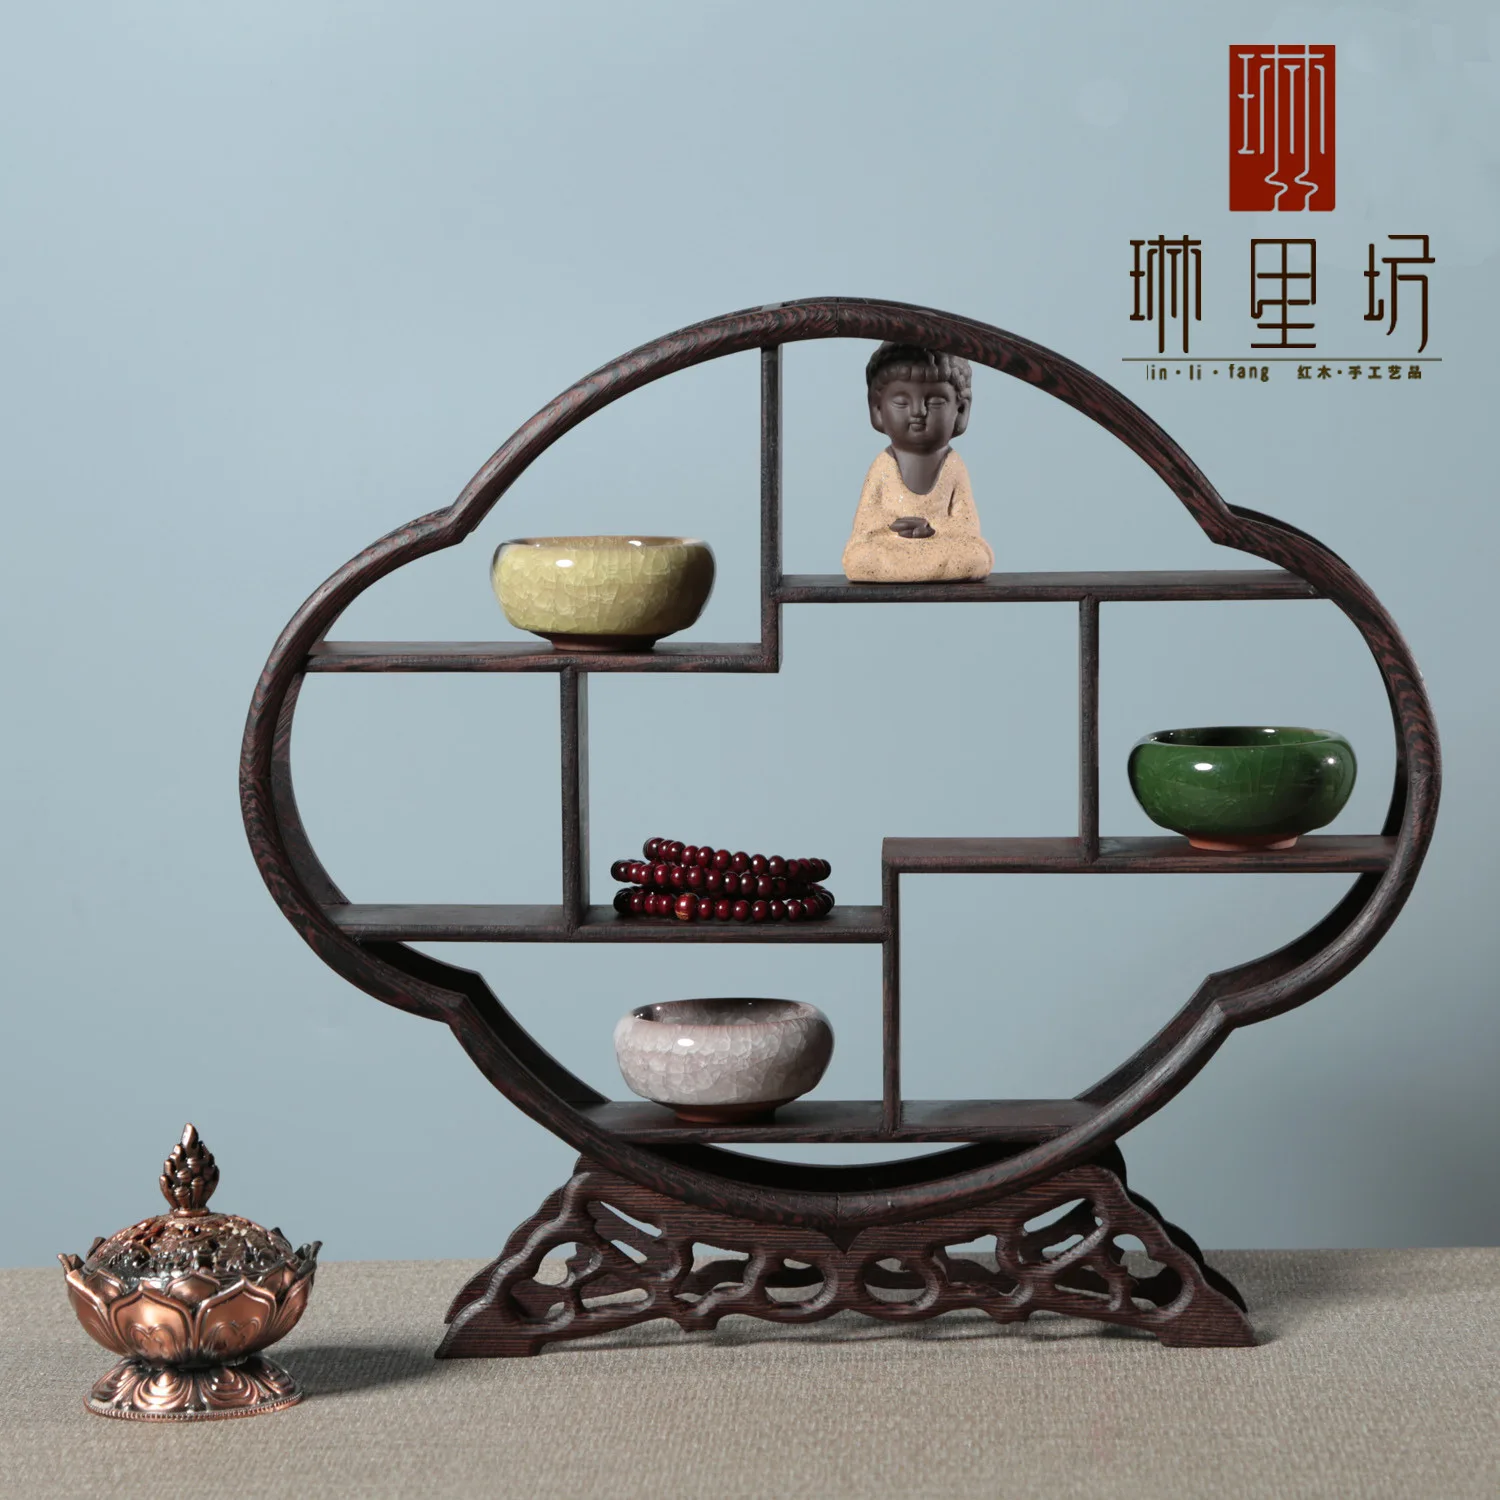 

Деревянная полка для хранения домашних животных, венге, фиолетовый чай, деревянные украшения в твердом стиле, китайский домашний глиняный каркас, нежный декор под старину